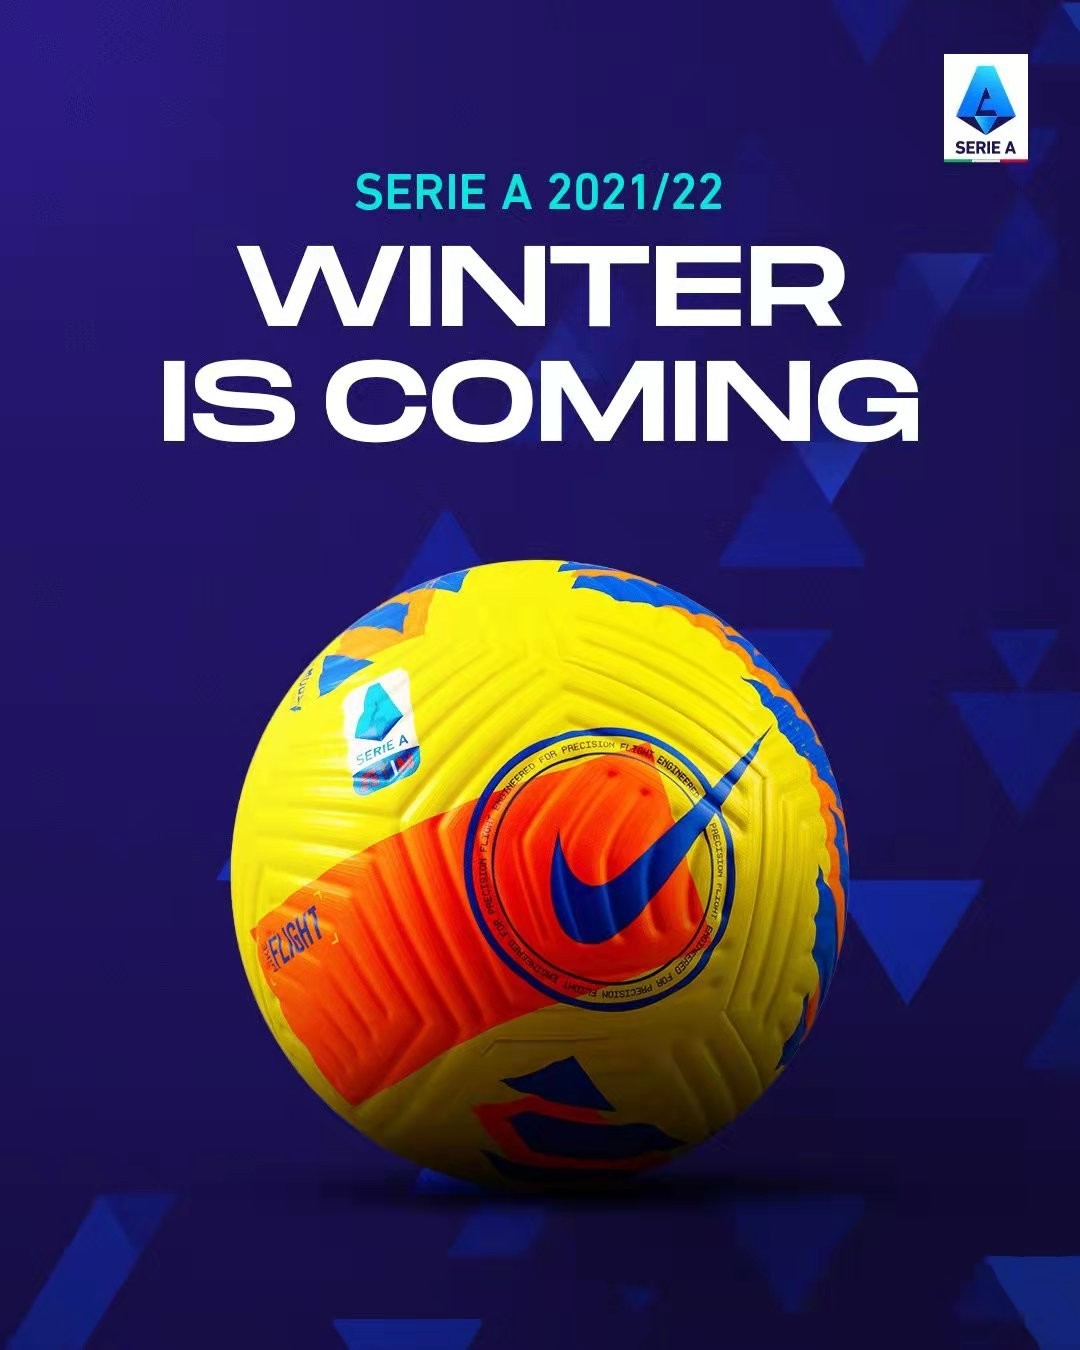 耐克发布意甲冬季用球，上周末已正式使用